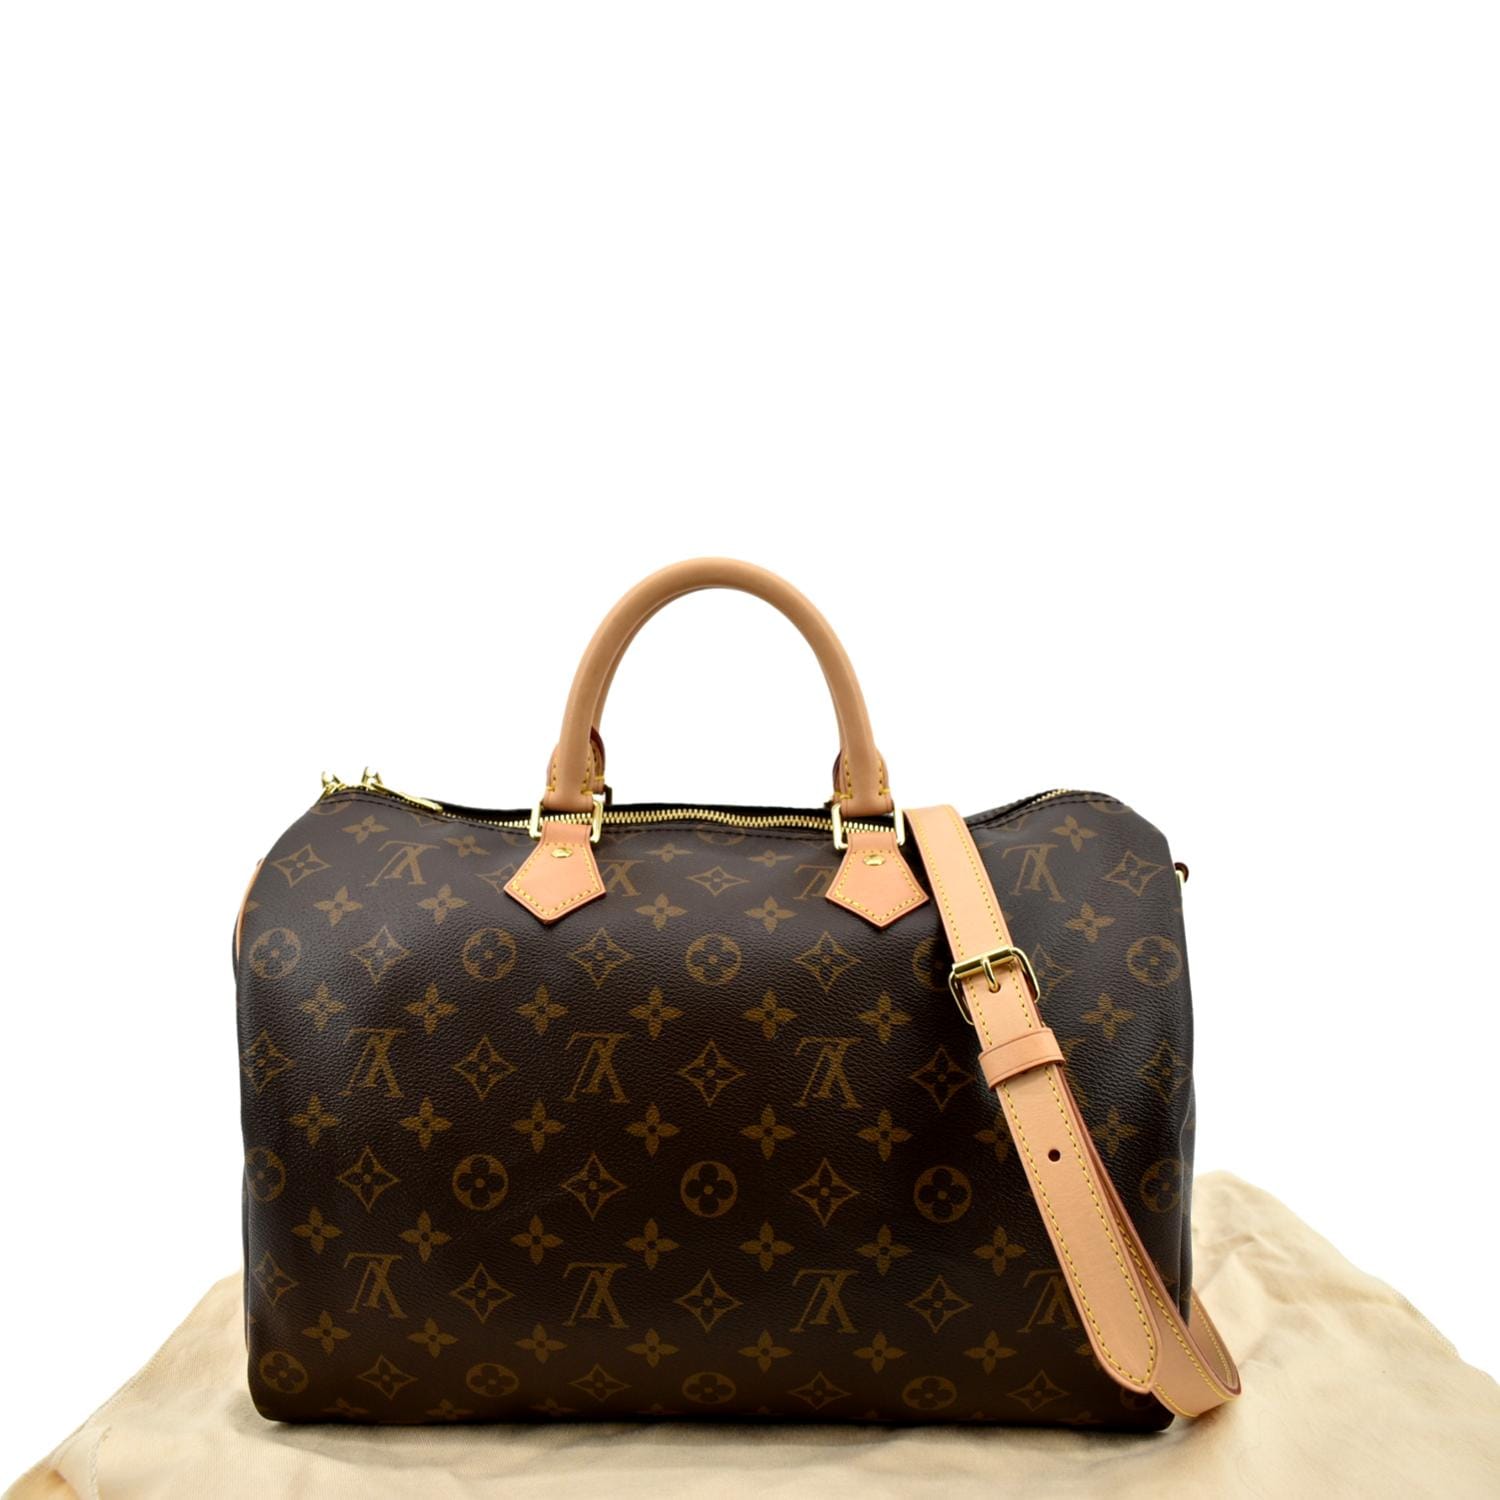 Louis Vuitton Speedy Speedy bandouli√ Re 35, Brown, One Size